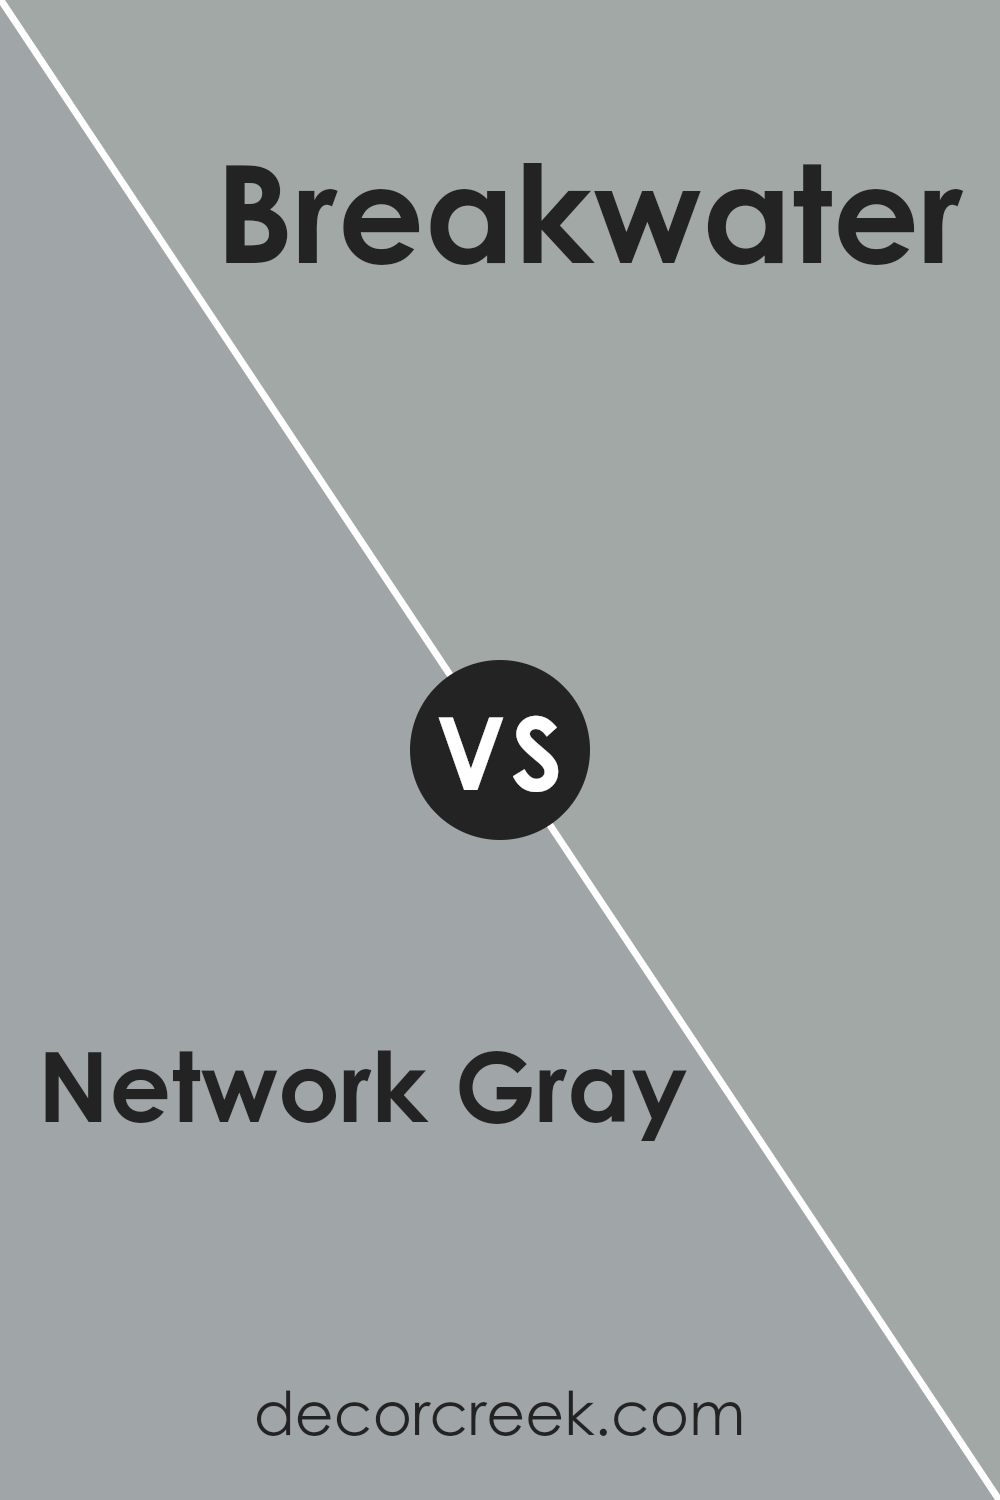 network_gray_sw_7073_vs_breakwater_sw_9638